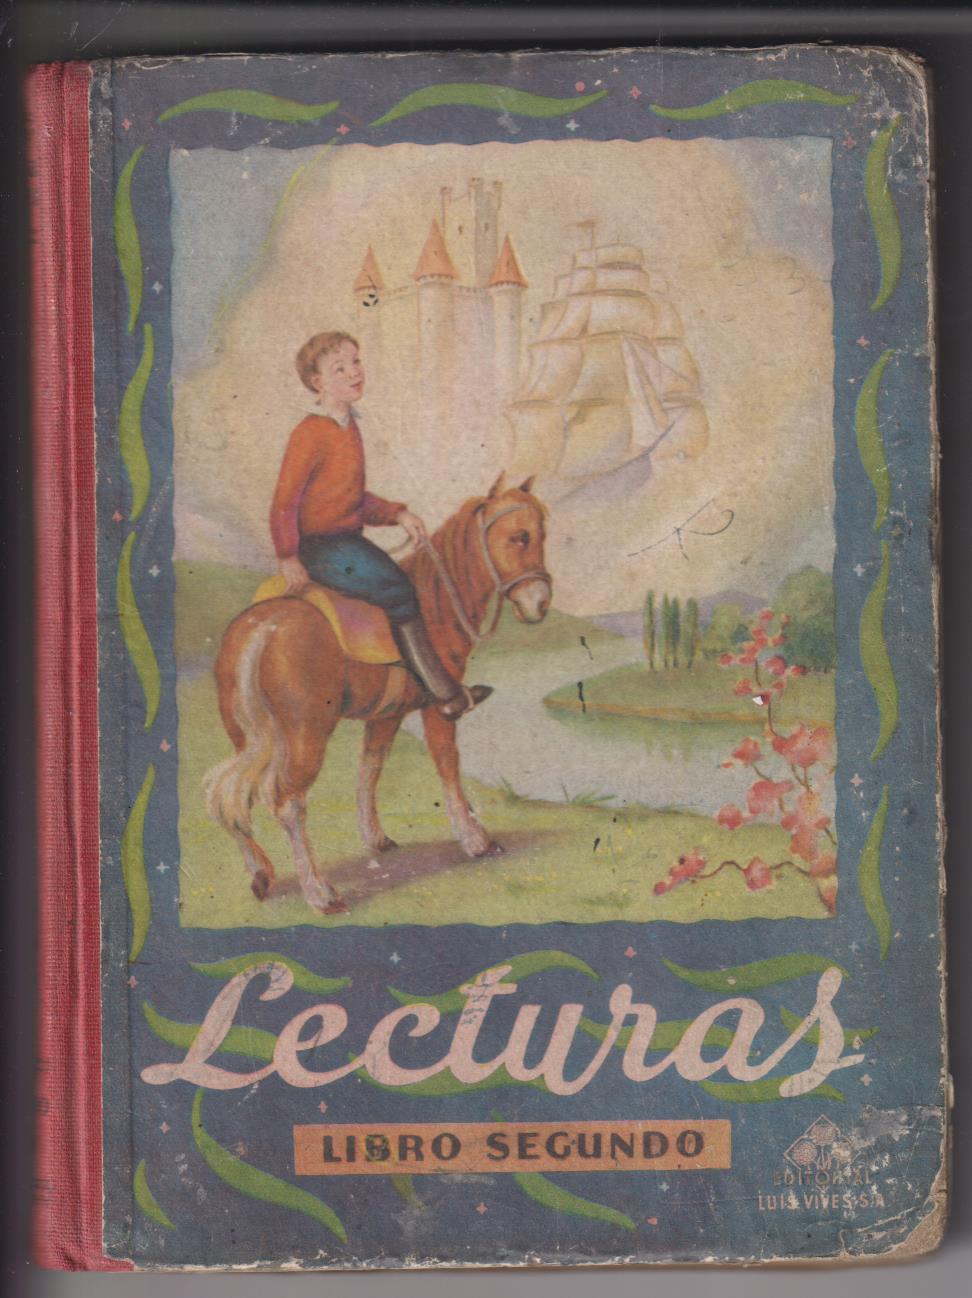 Lecturas Libro Segundo. Editorial Vives 1951